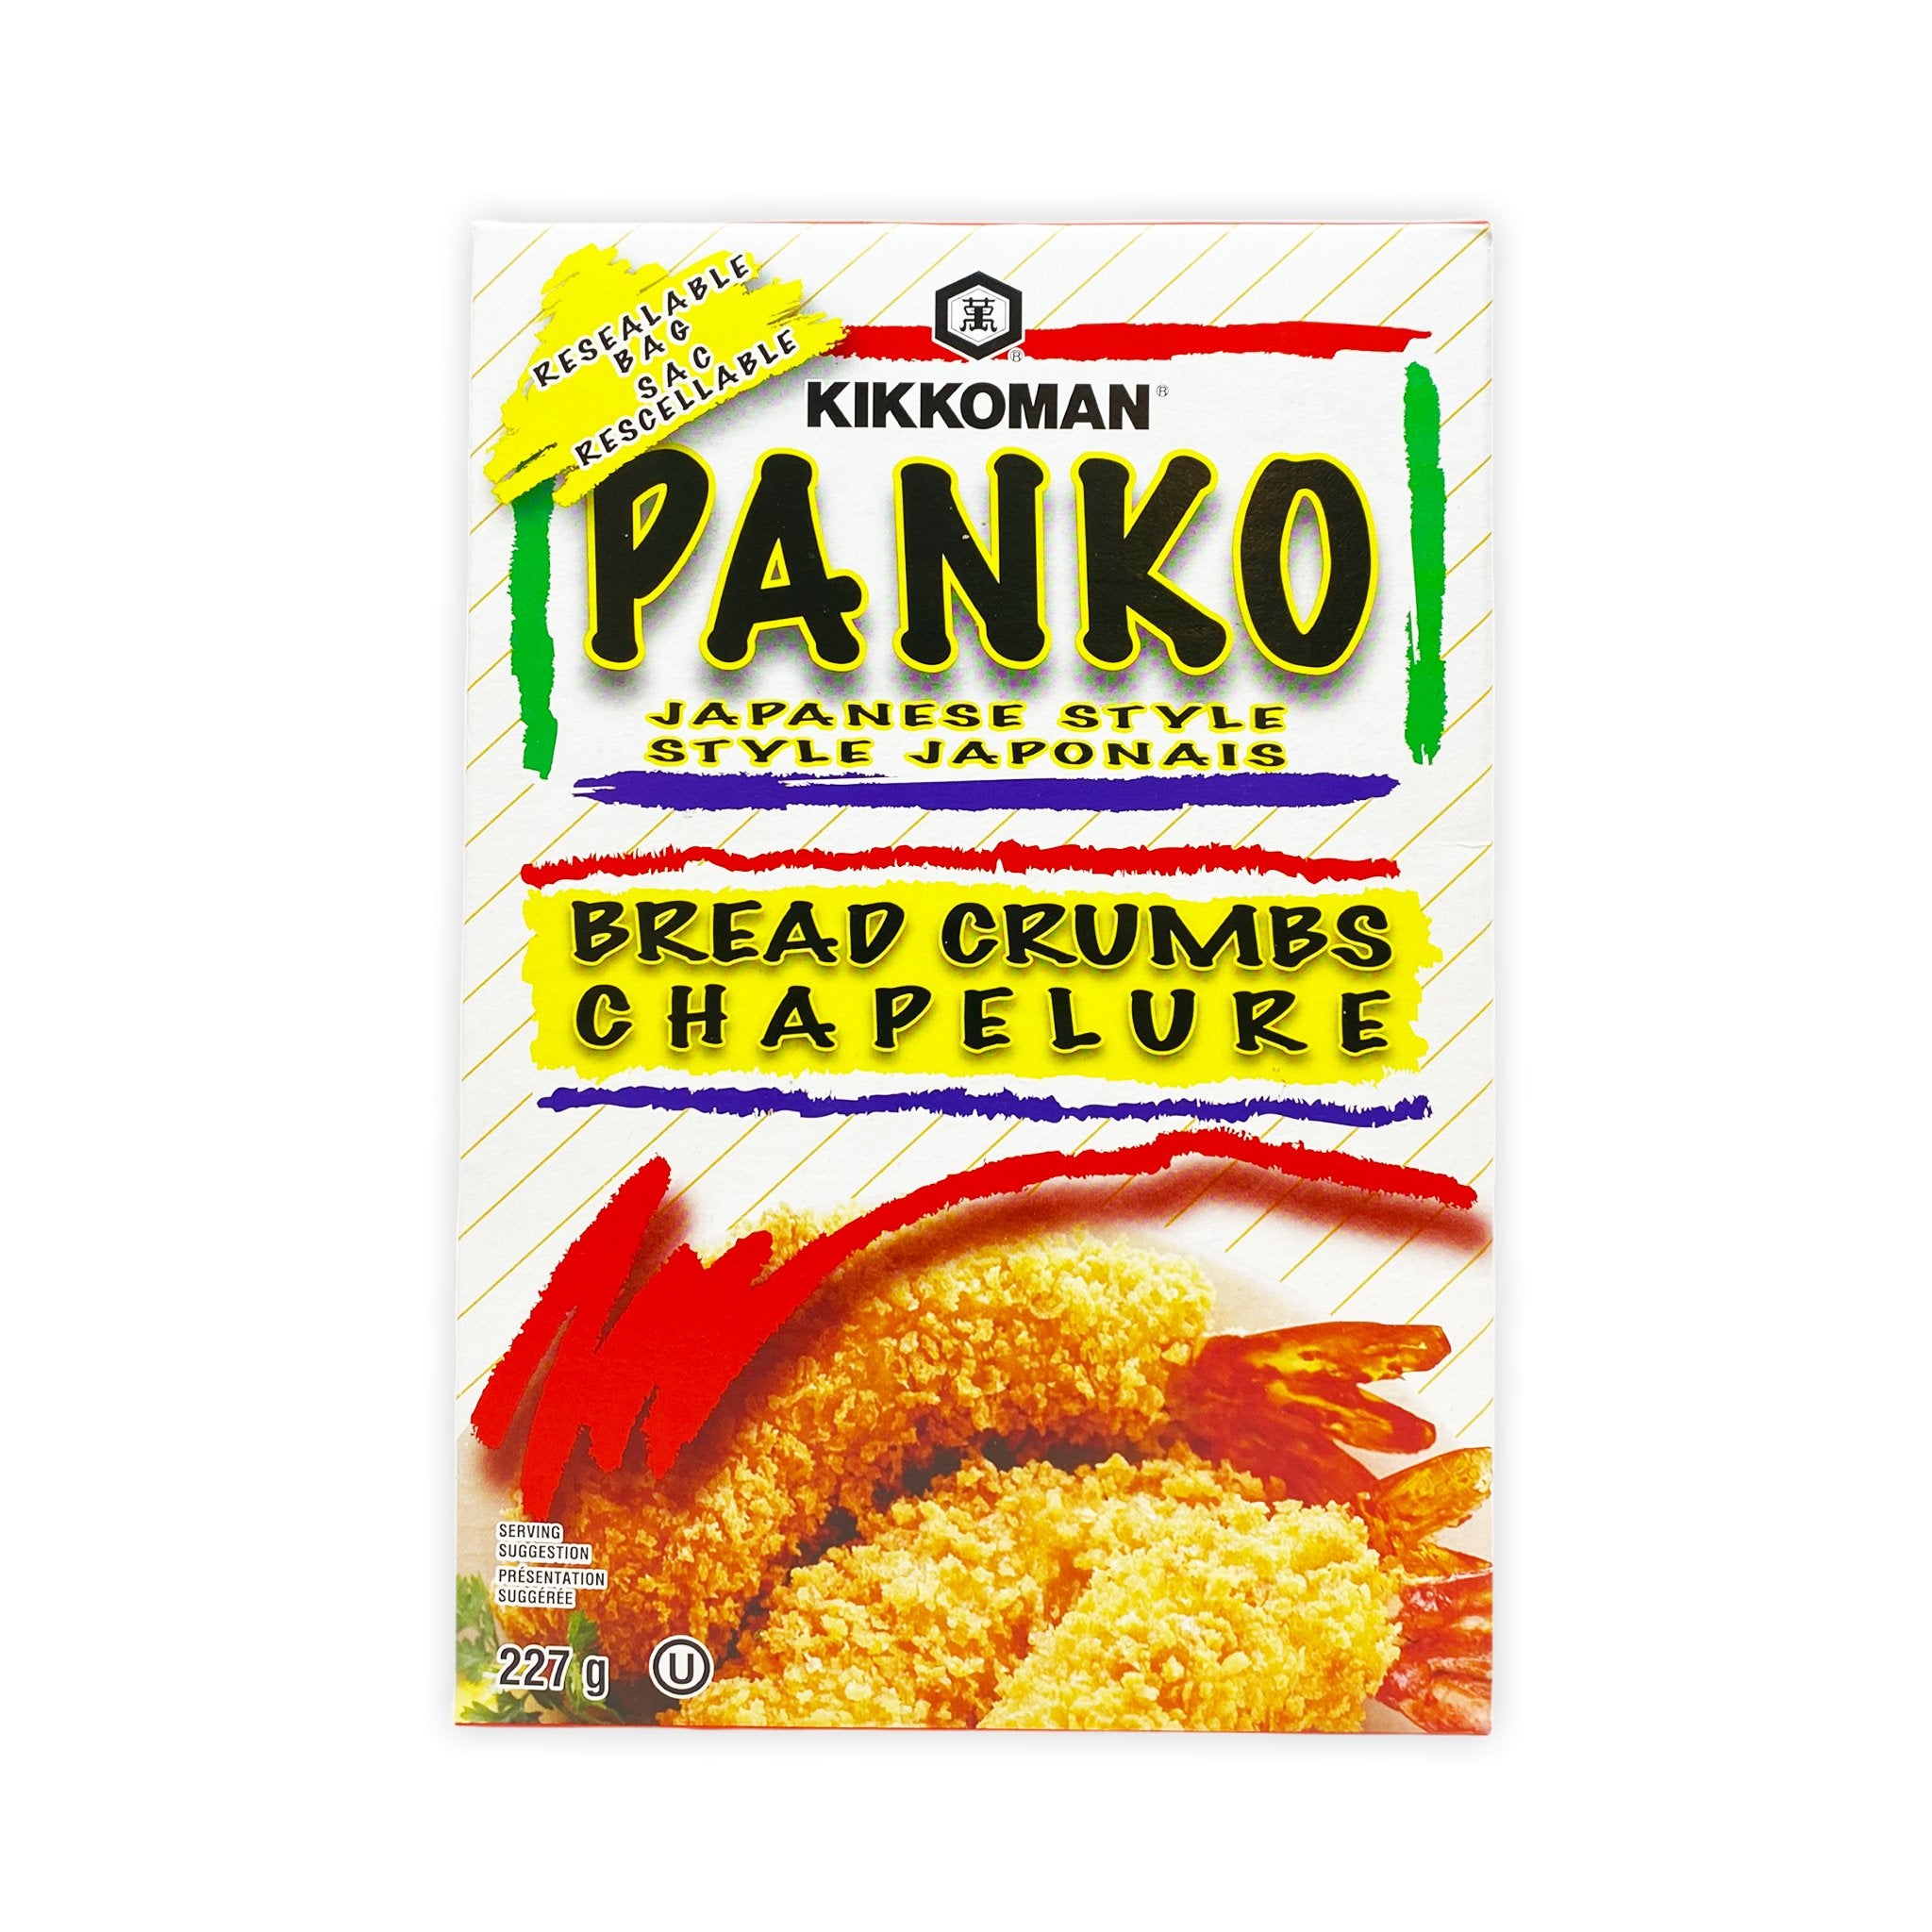 Panure panko – SUE FOODS